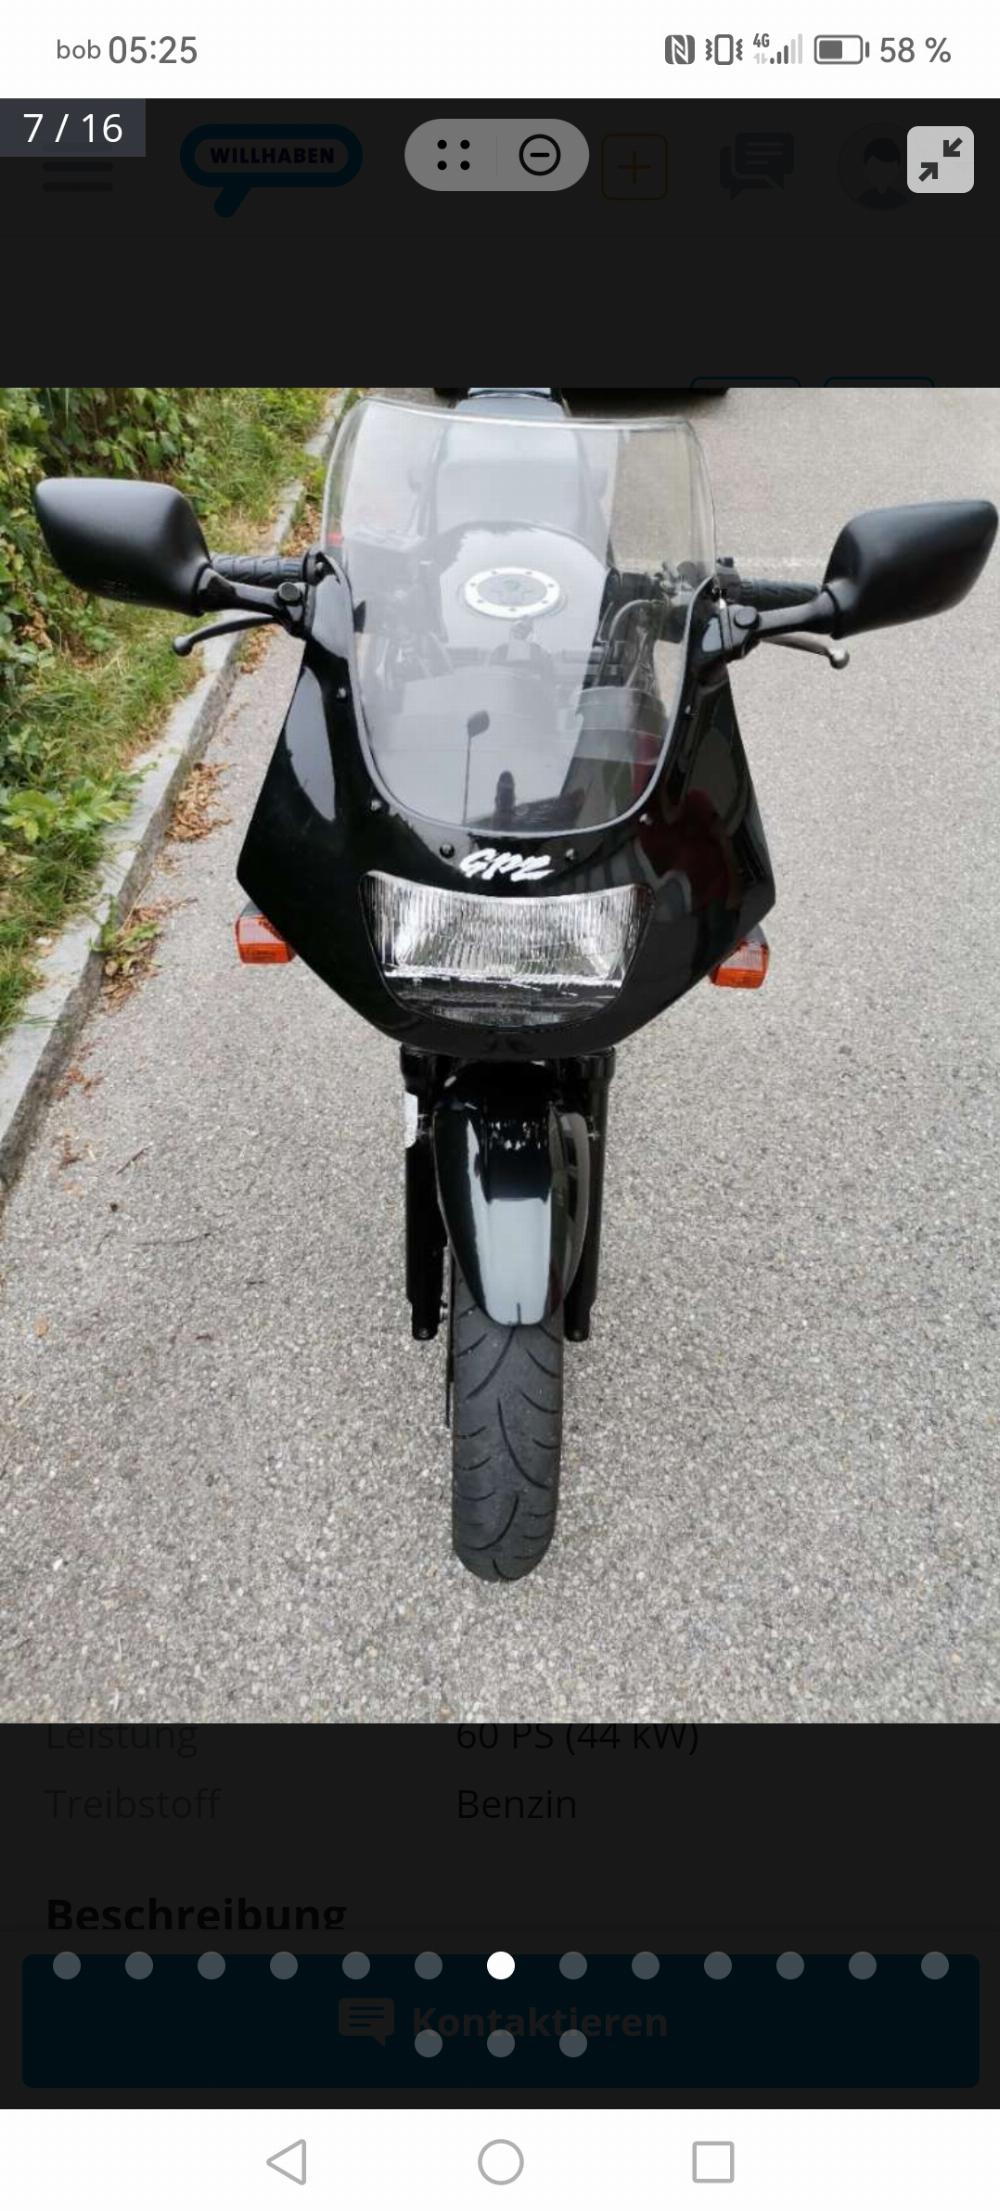 Motorrad verkaufen Kawasaki Gpz500S Ankauf